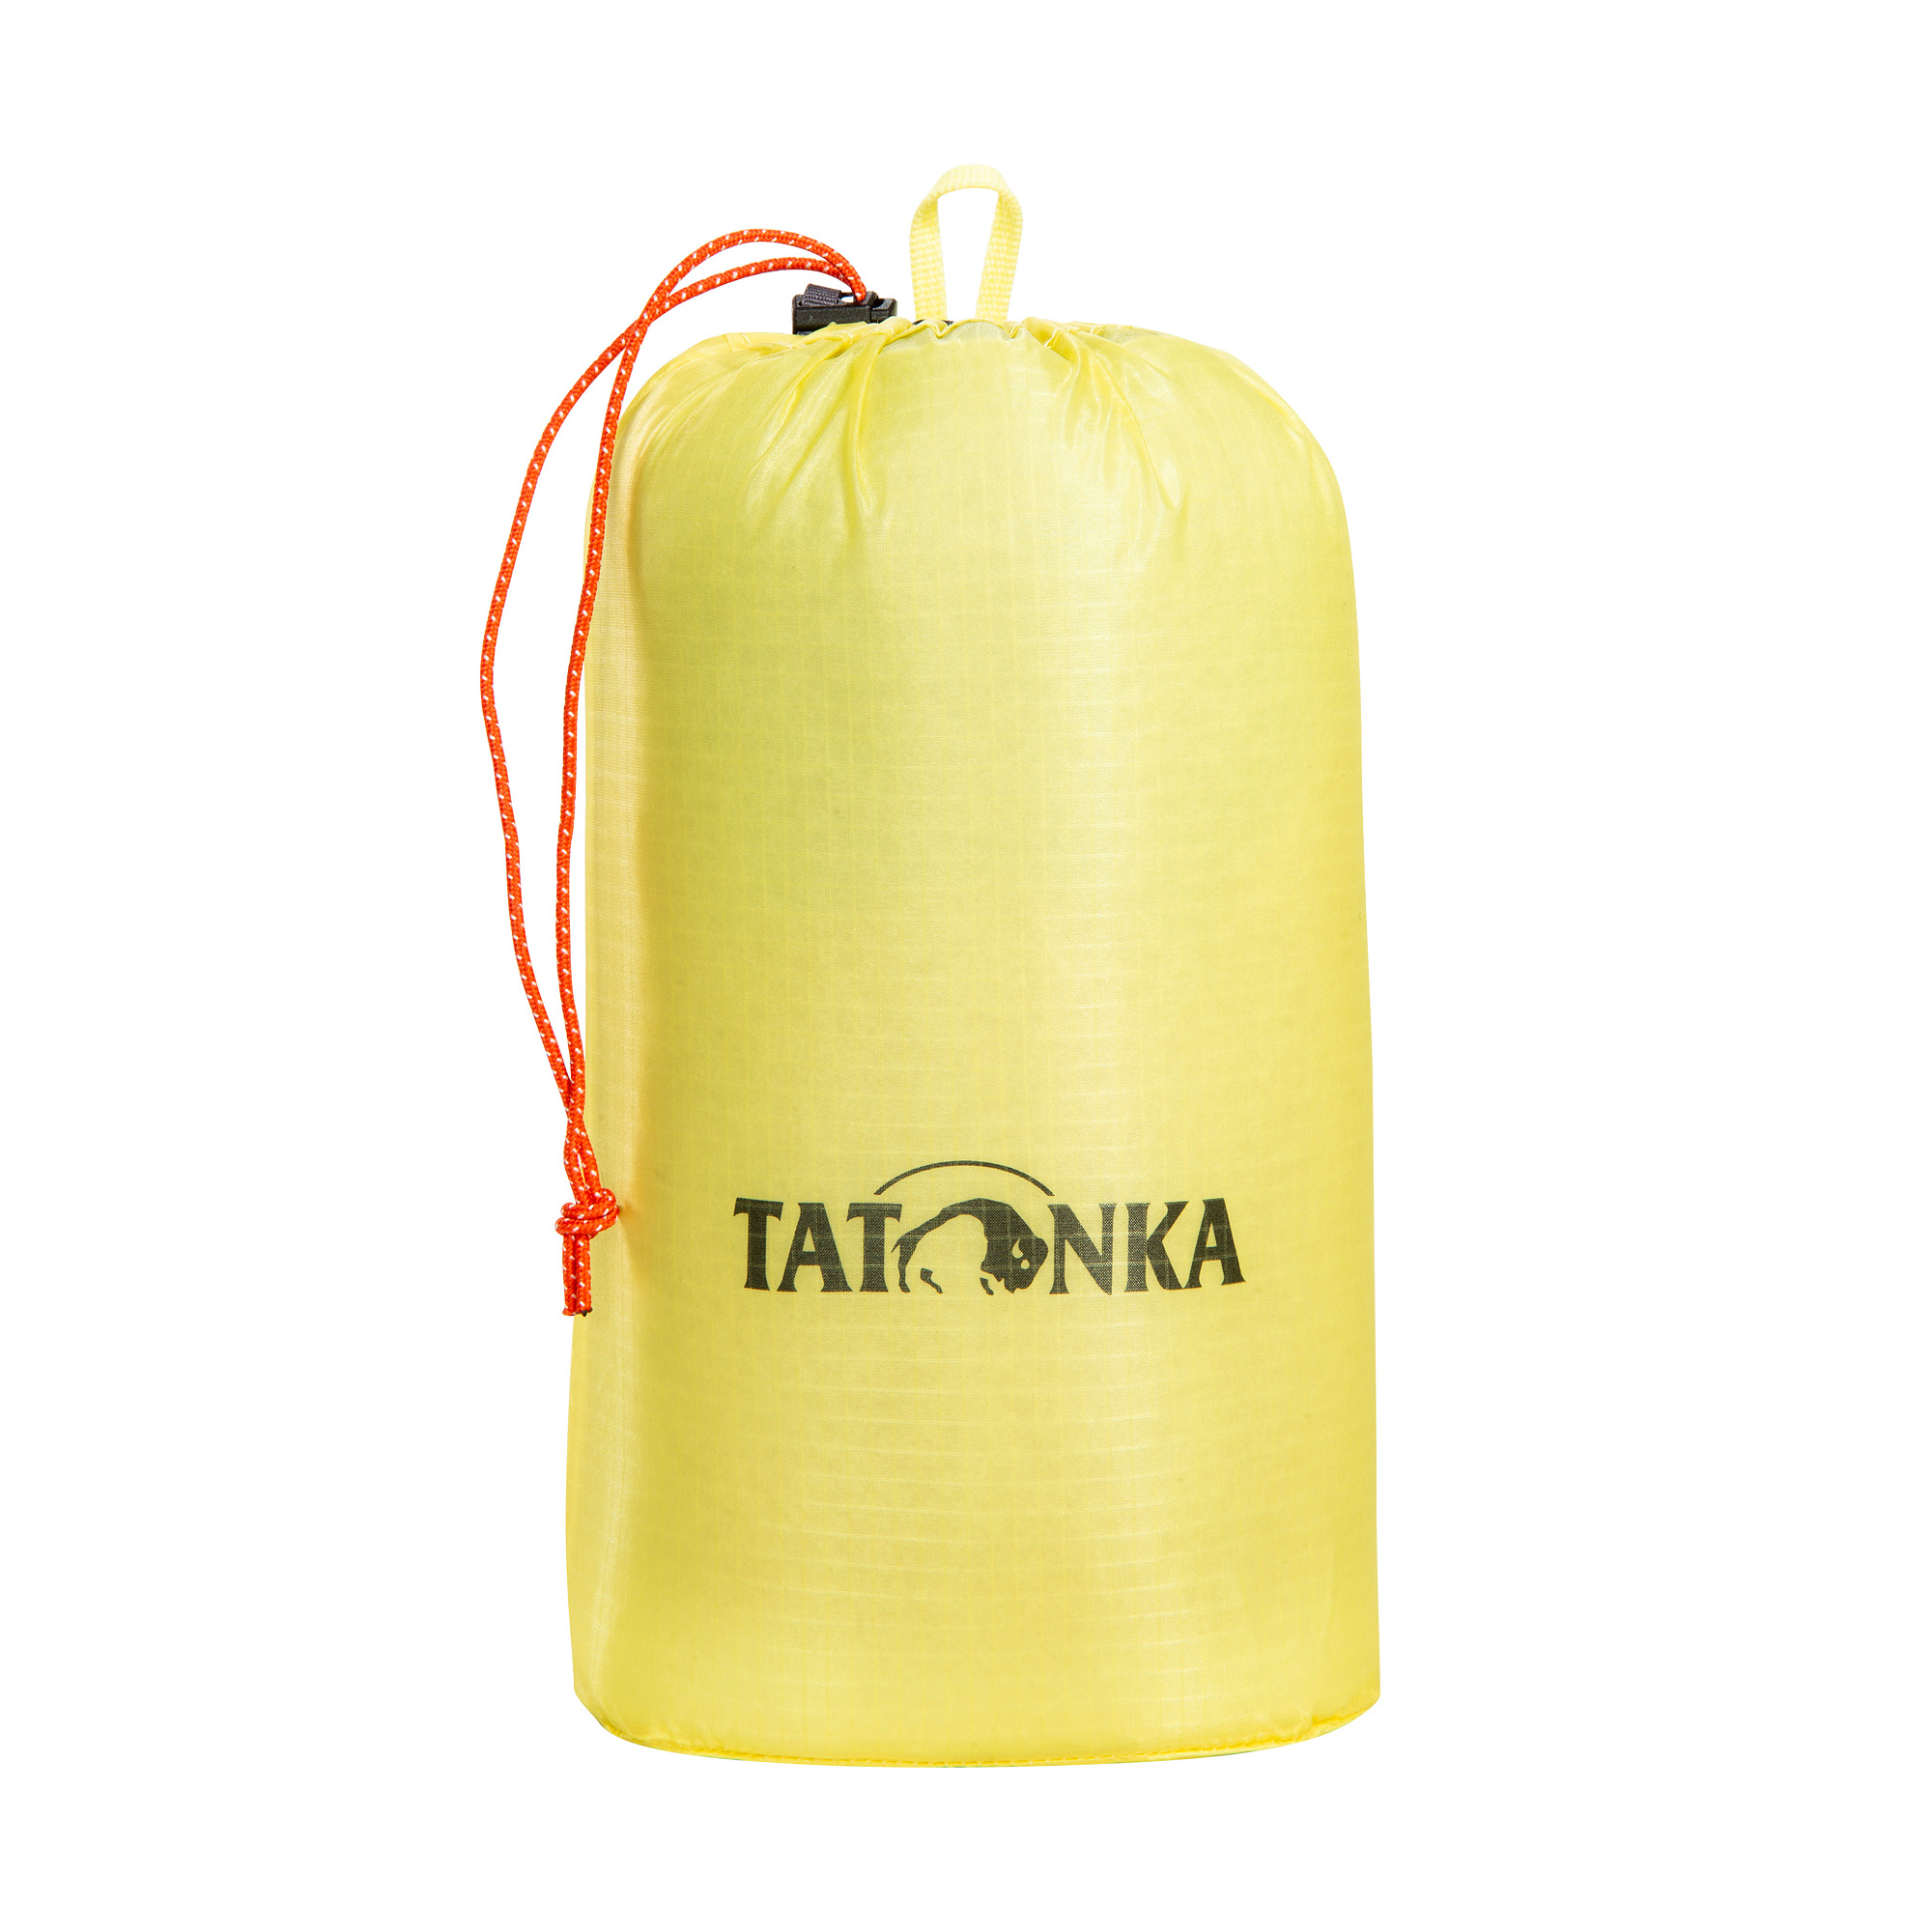 Tatonka SQZY Stuff Bag 2l light yellow gelb Packwürfel & Staubeutel 4013236336474